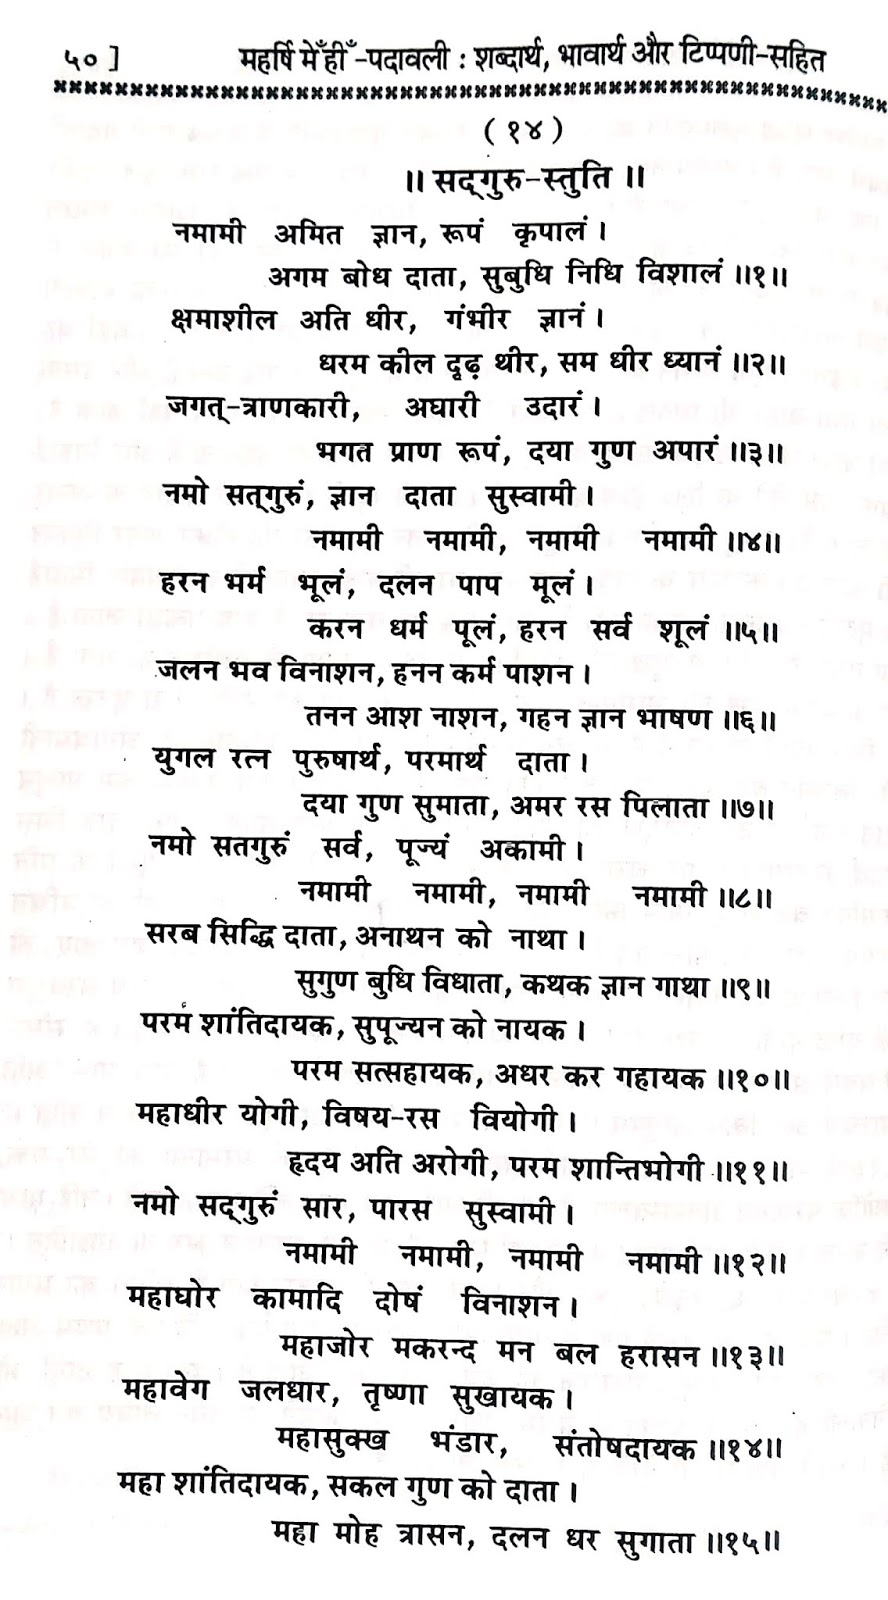 P14, Description of qualities worthy of Sadhguru "नमामि अमित ज्ञान,..." महर्षि मेंहीं पदावली भजन अर्थ सहित। रावली भजन 14 मूल पद